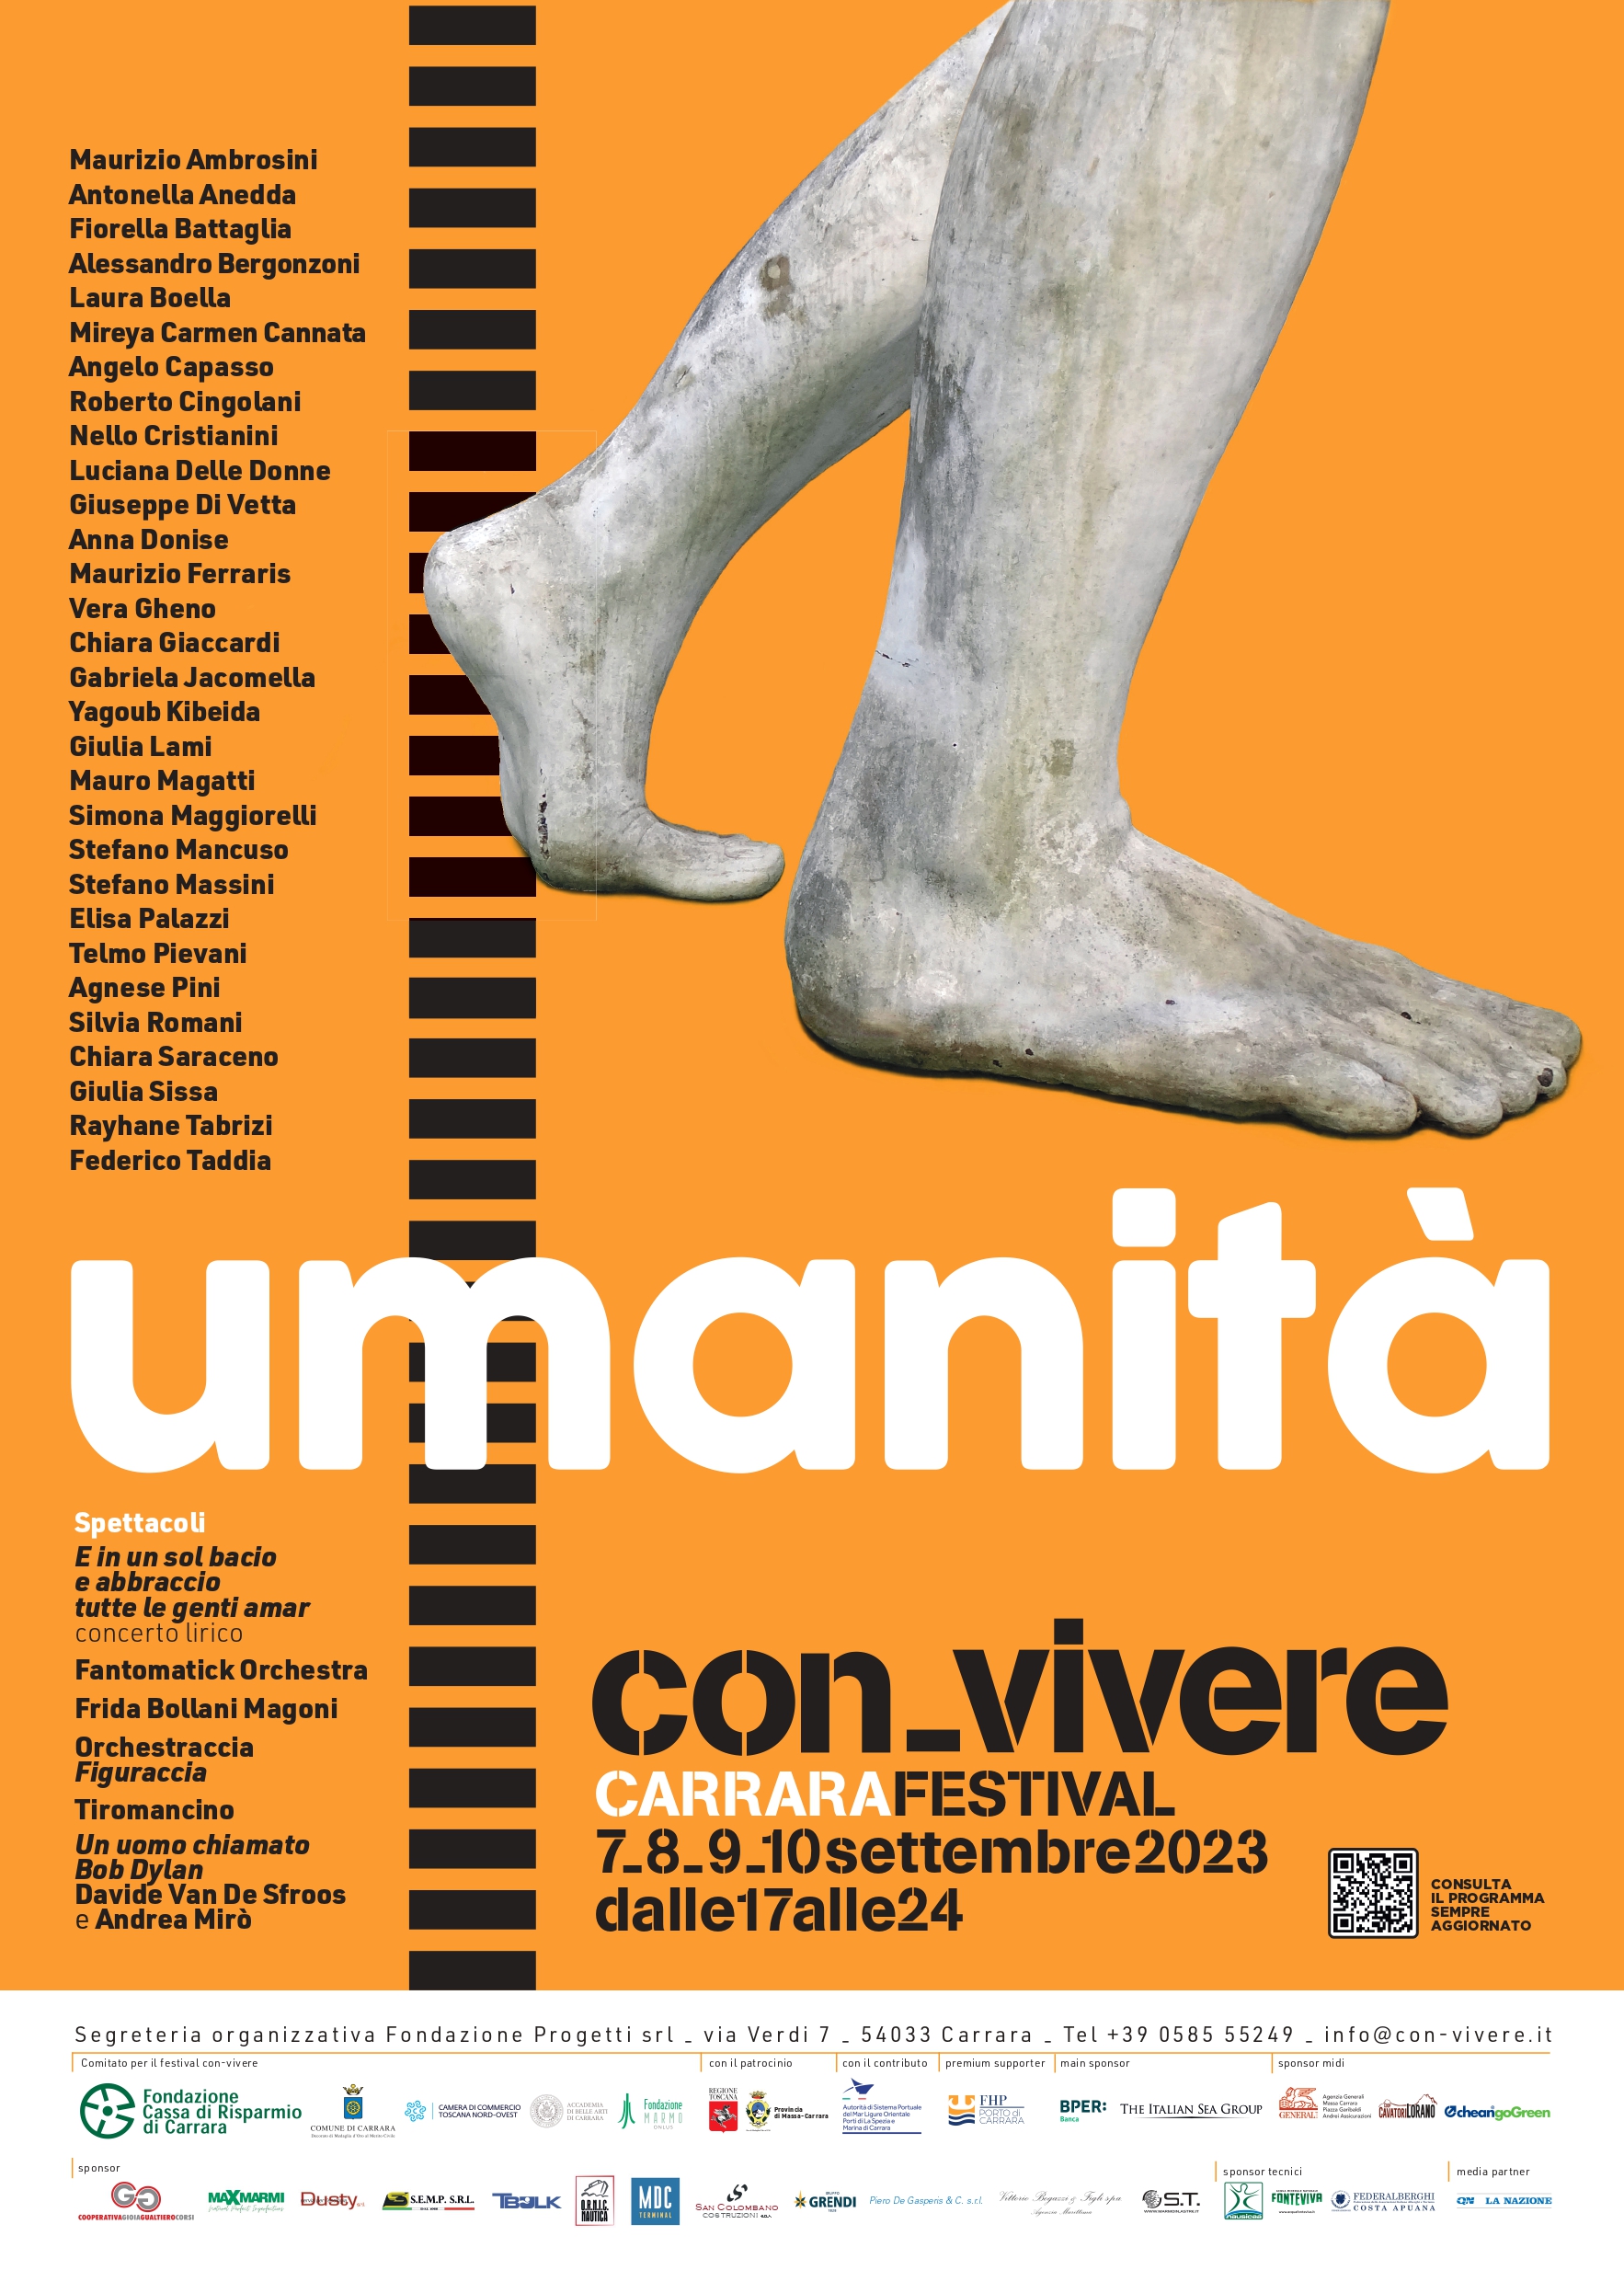 con-vivere Carrara festival 2023 Umanità